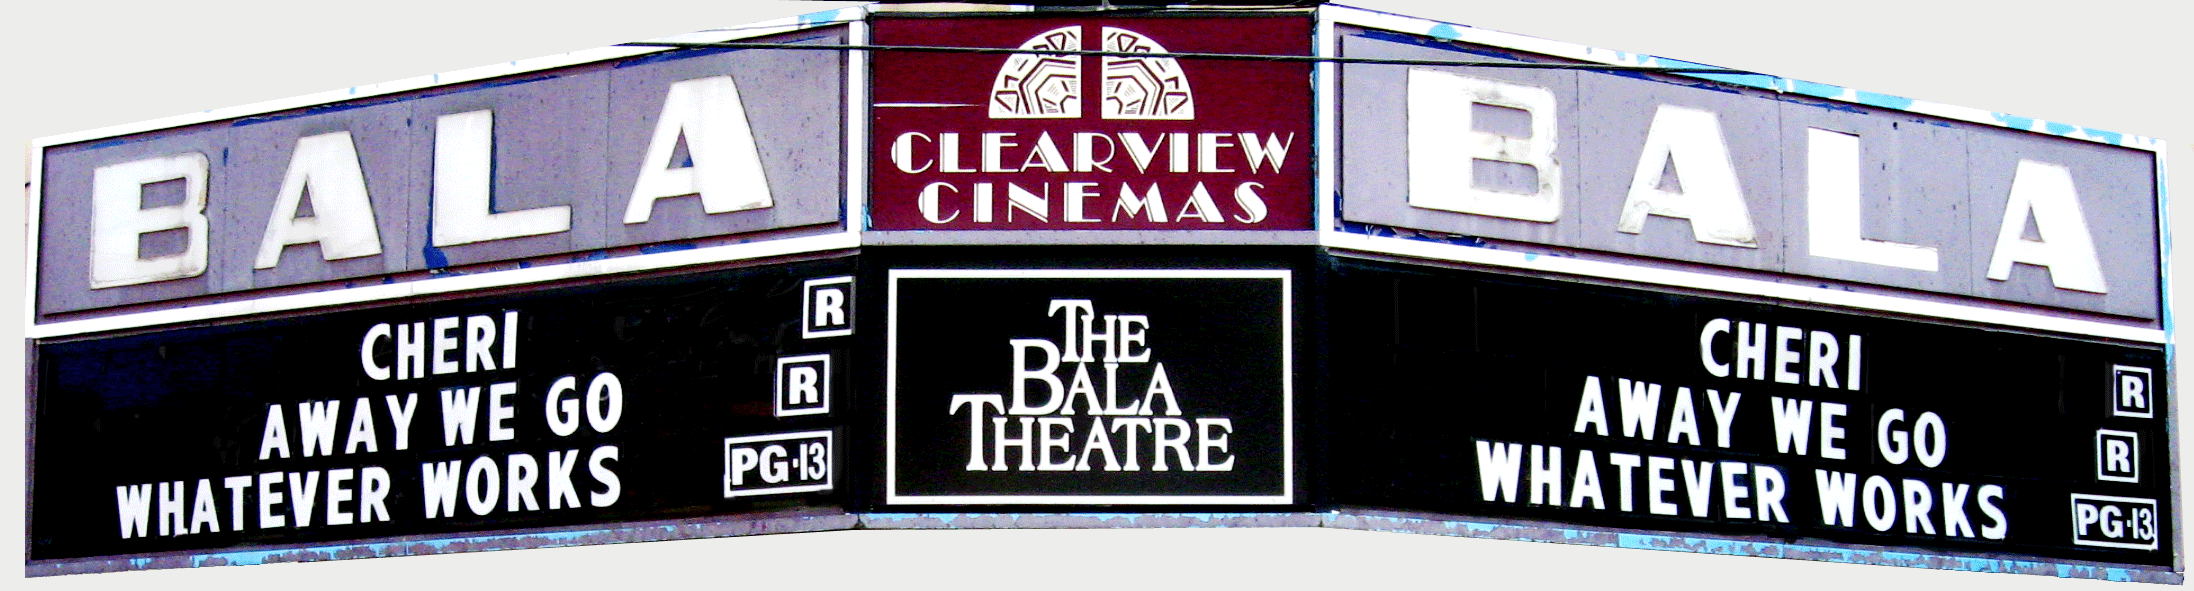 Bala Theater